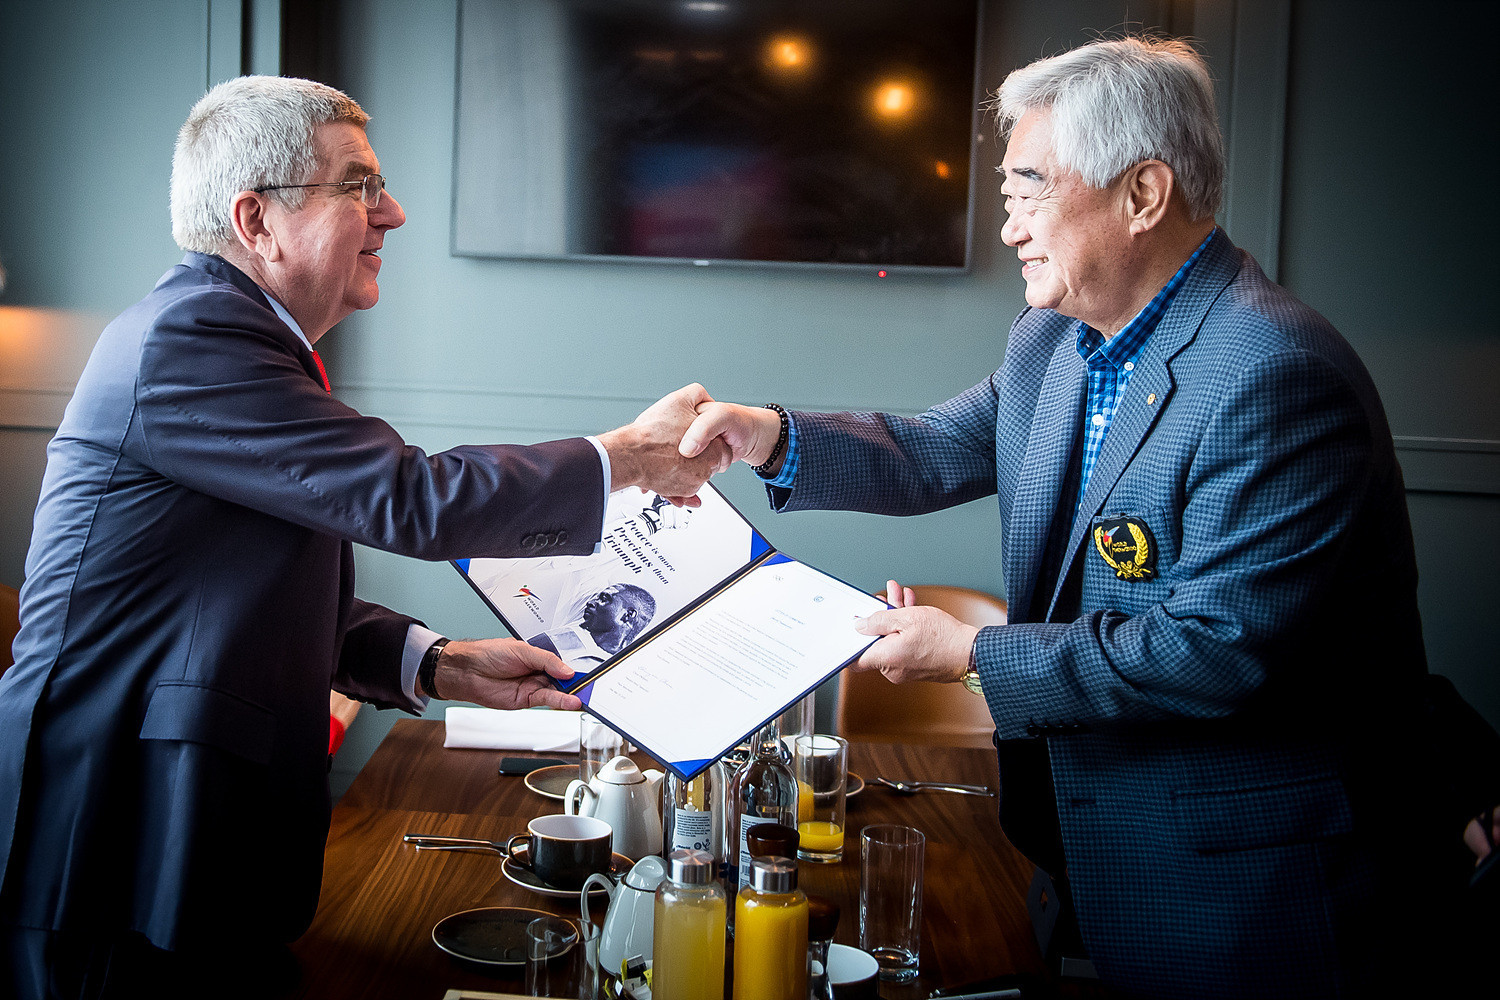 Choue Chung-won, right, signed the pledge alongside Thomas Bach ©World Taekwondo